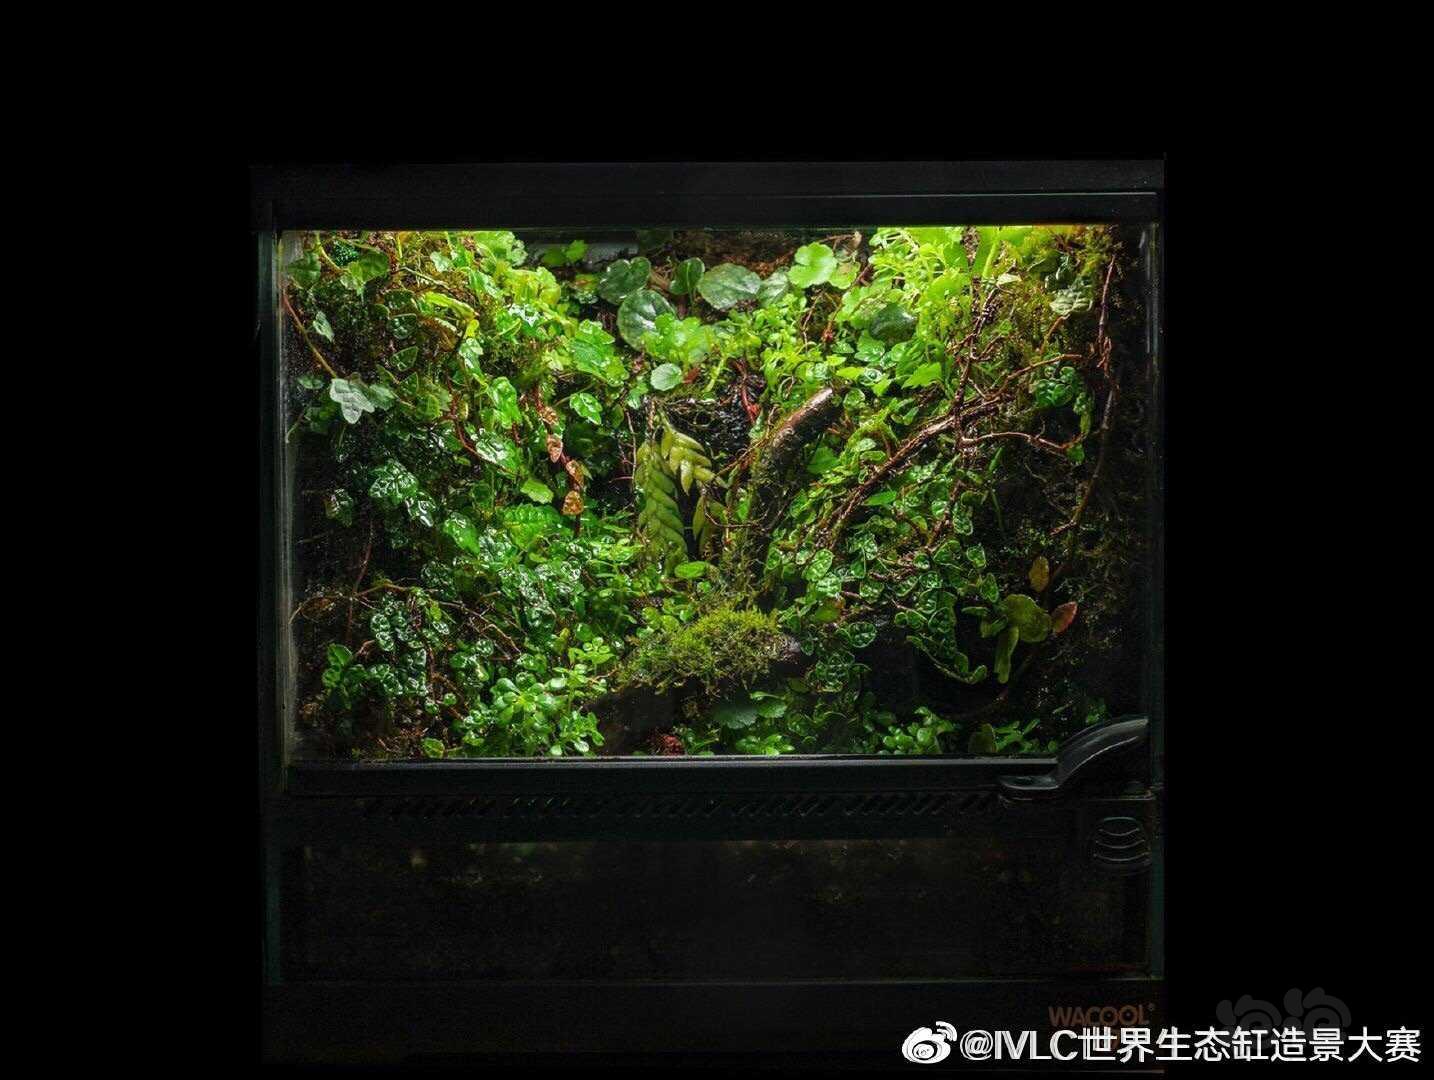 【雨林】2019 IVLC大赛【小缸组】前十名作品-图1